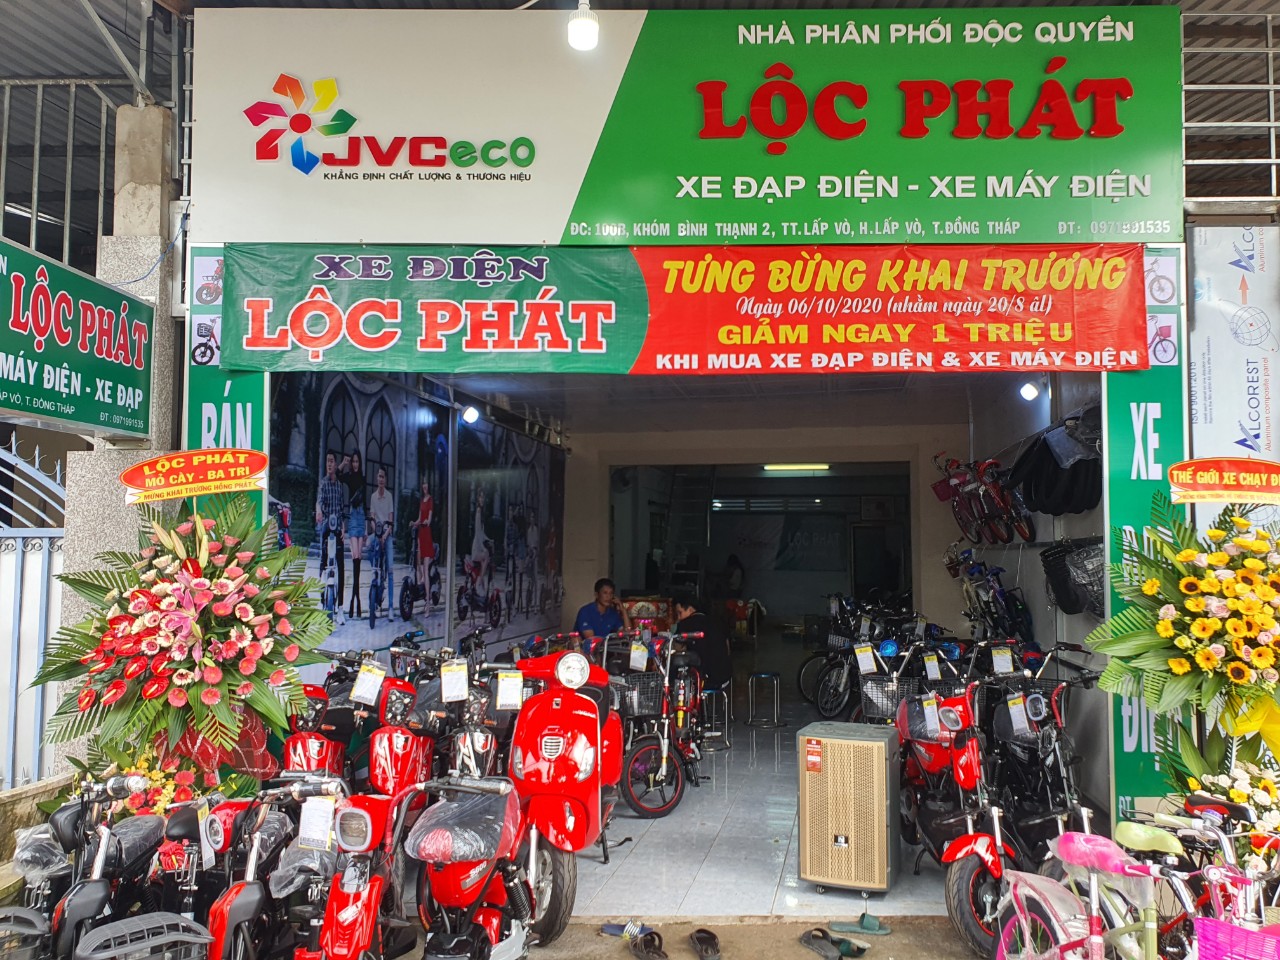 Giảm ngay 1 triệu đồng khi mua xe đạp điện, xe máy điện tại Lộc Phát